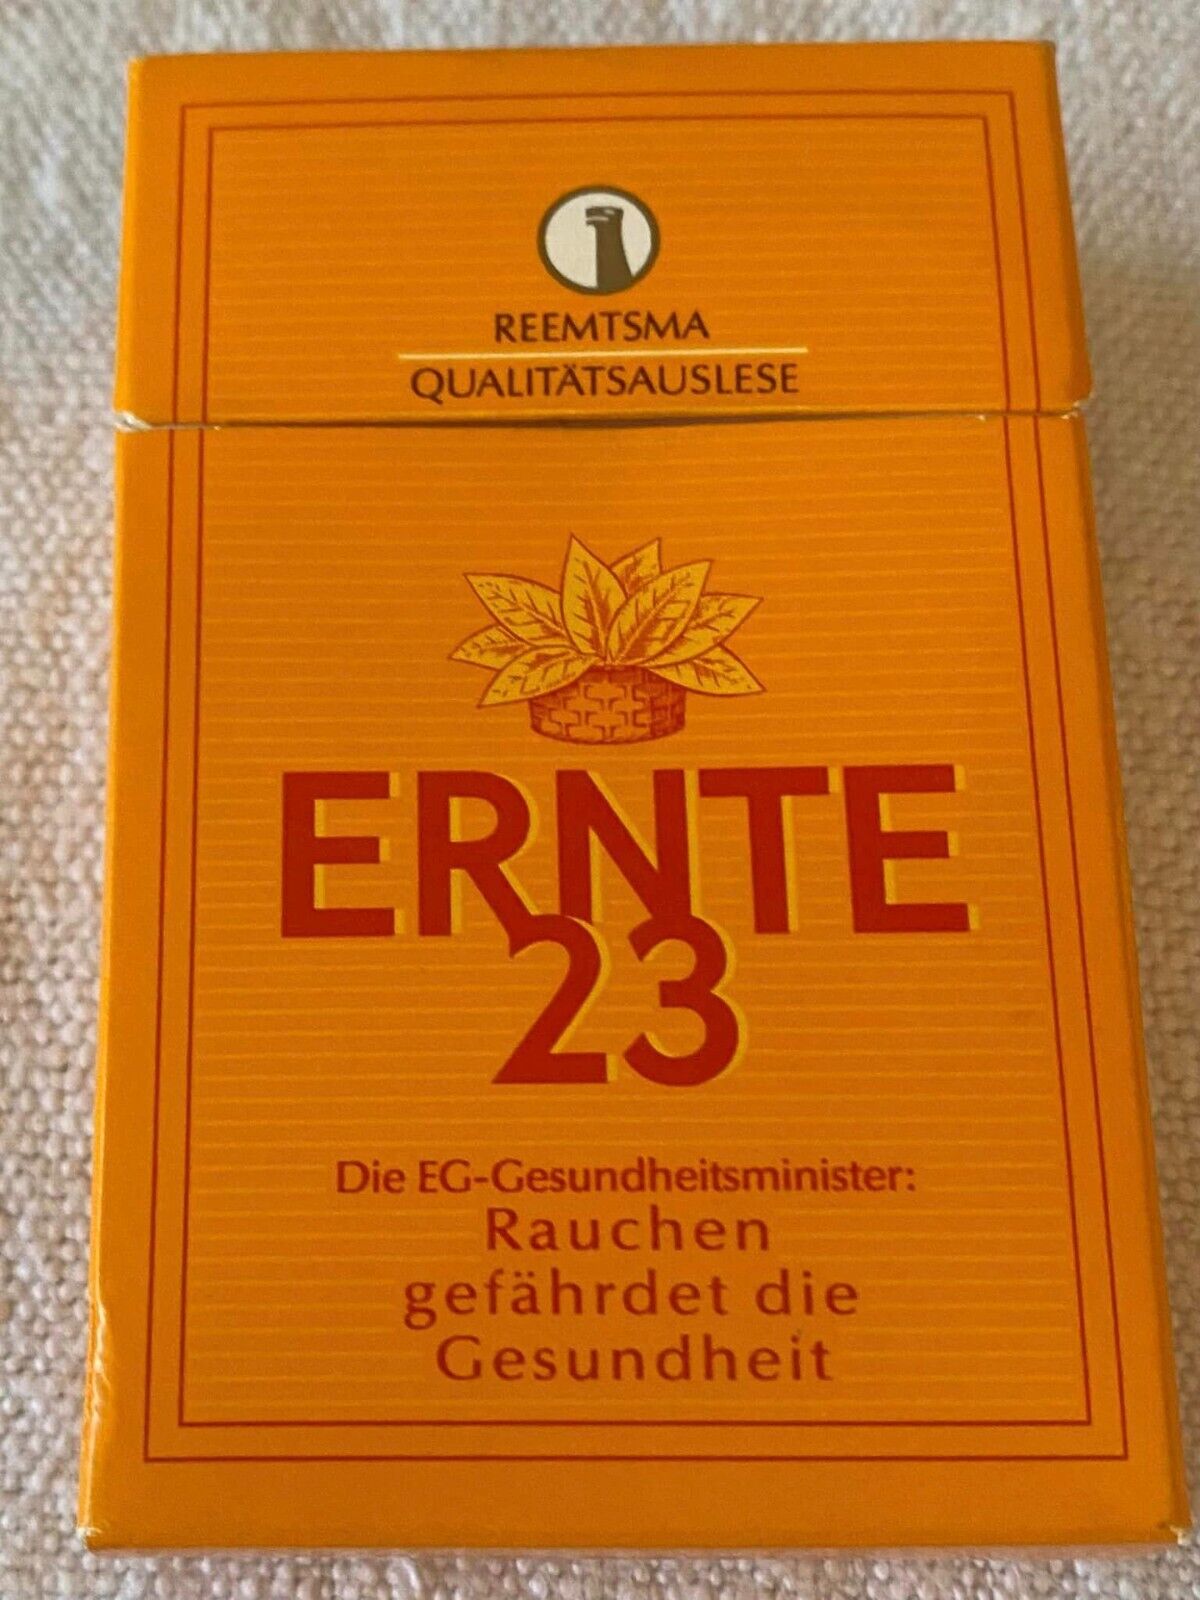 Vintage Ernte 23 Filters Cigarette Cigarettes Cigarette Paper Box Empty Cigarett